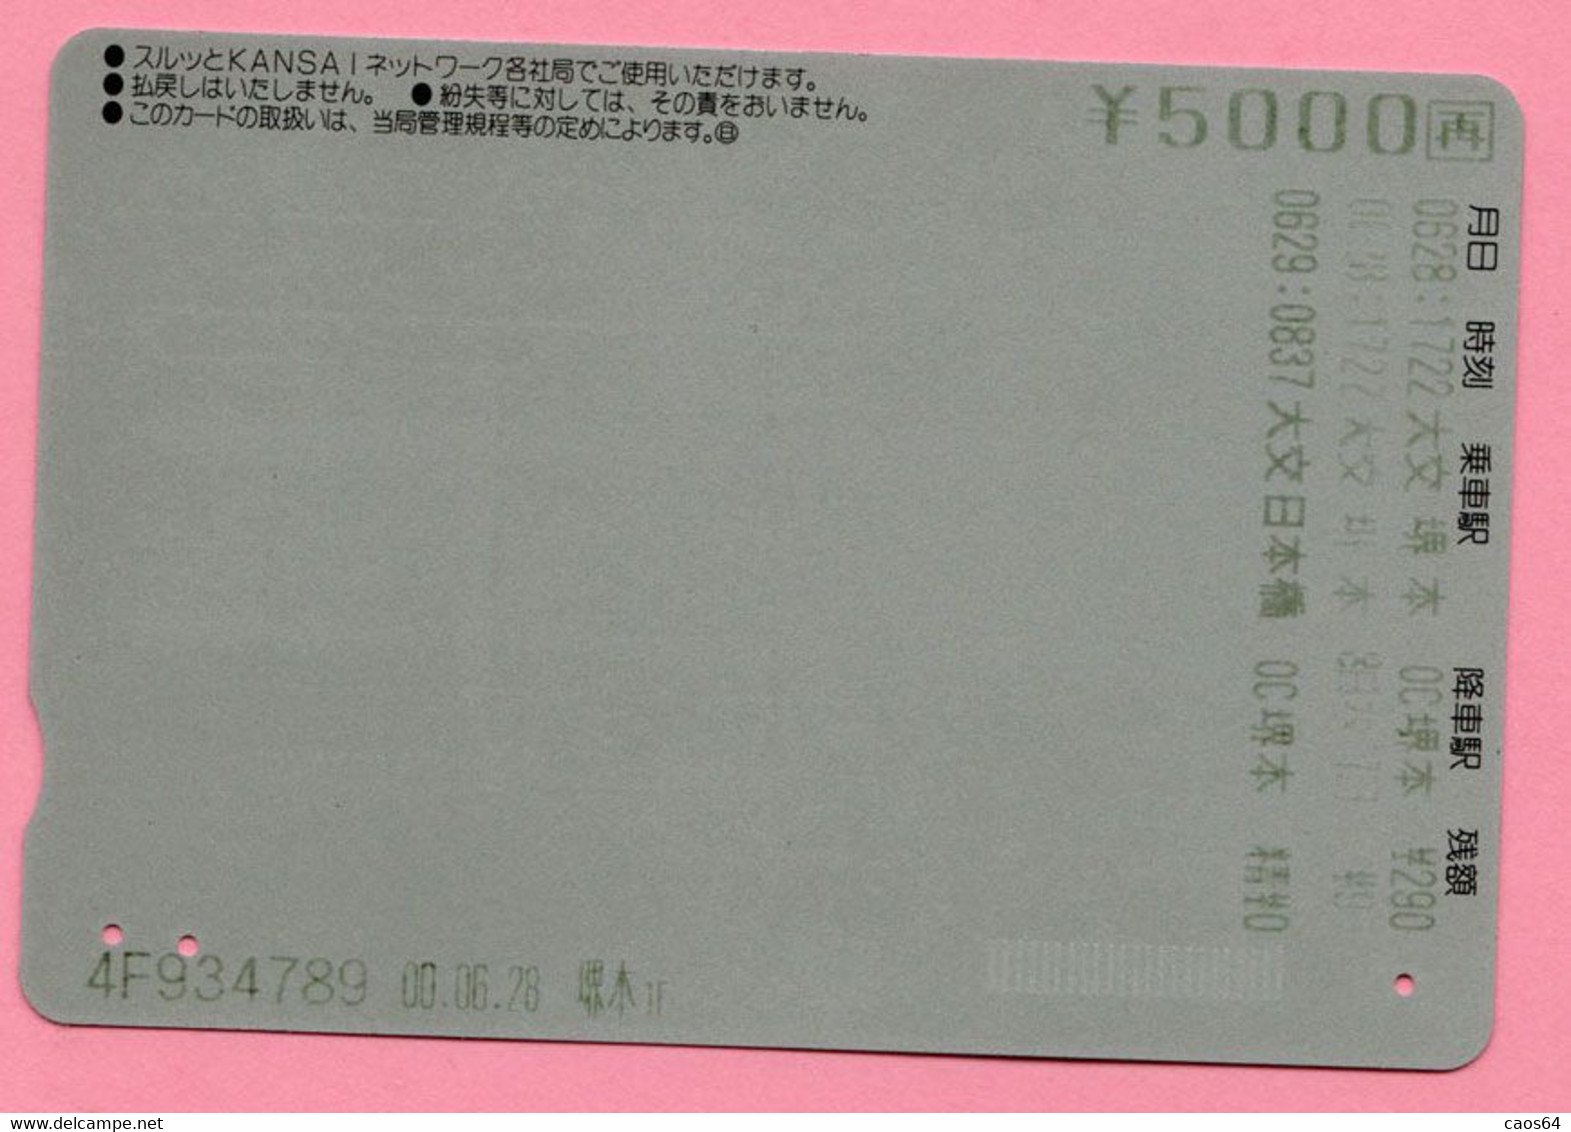 GIAPPONE Ticket Biglietto Map - Kansai Railway Rainbow Card 5.000 ¥ - Usato - Welt